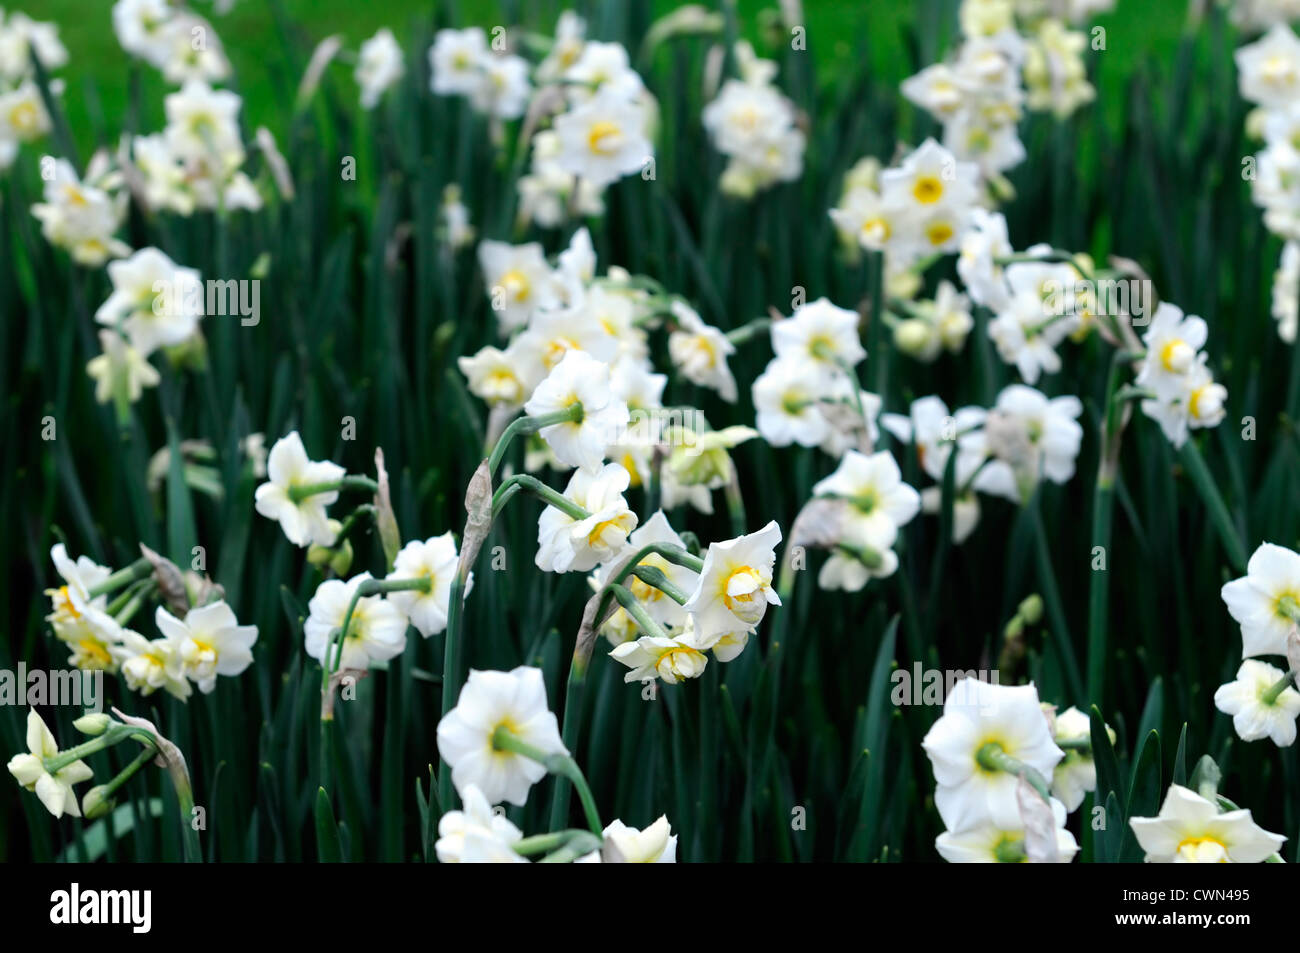 Narcissus allegria crema bianca double daffodil fiori letto deriva la molla closeup ritratti vegetali fioritura bloom blossom Foto Stock